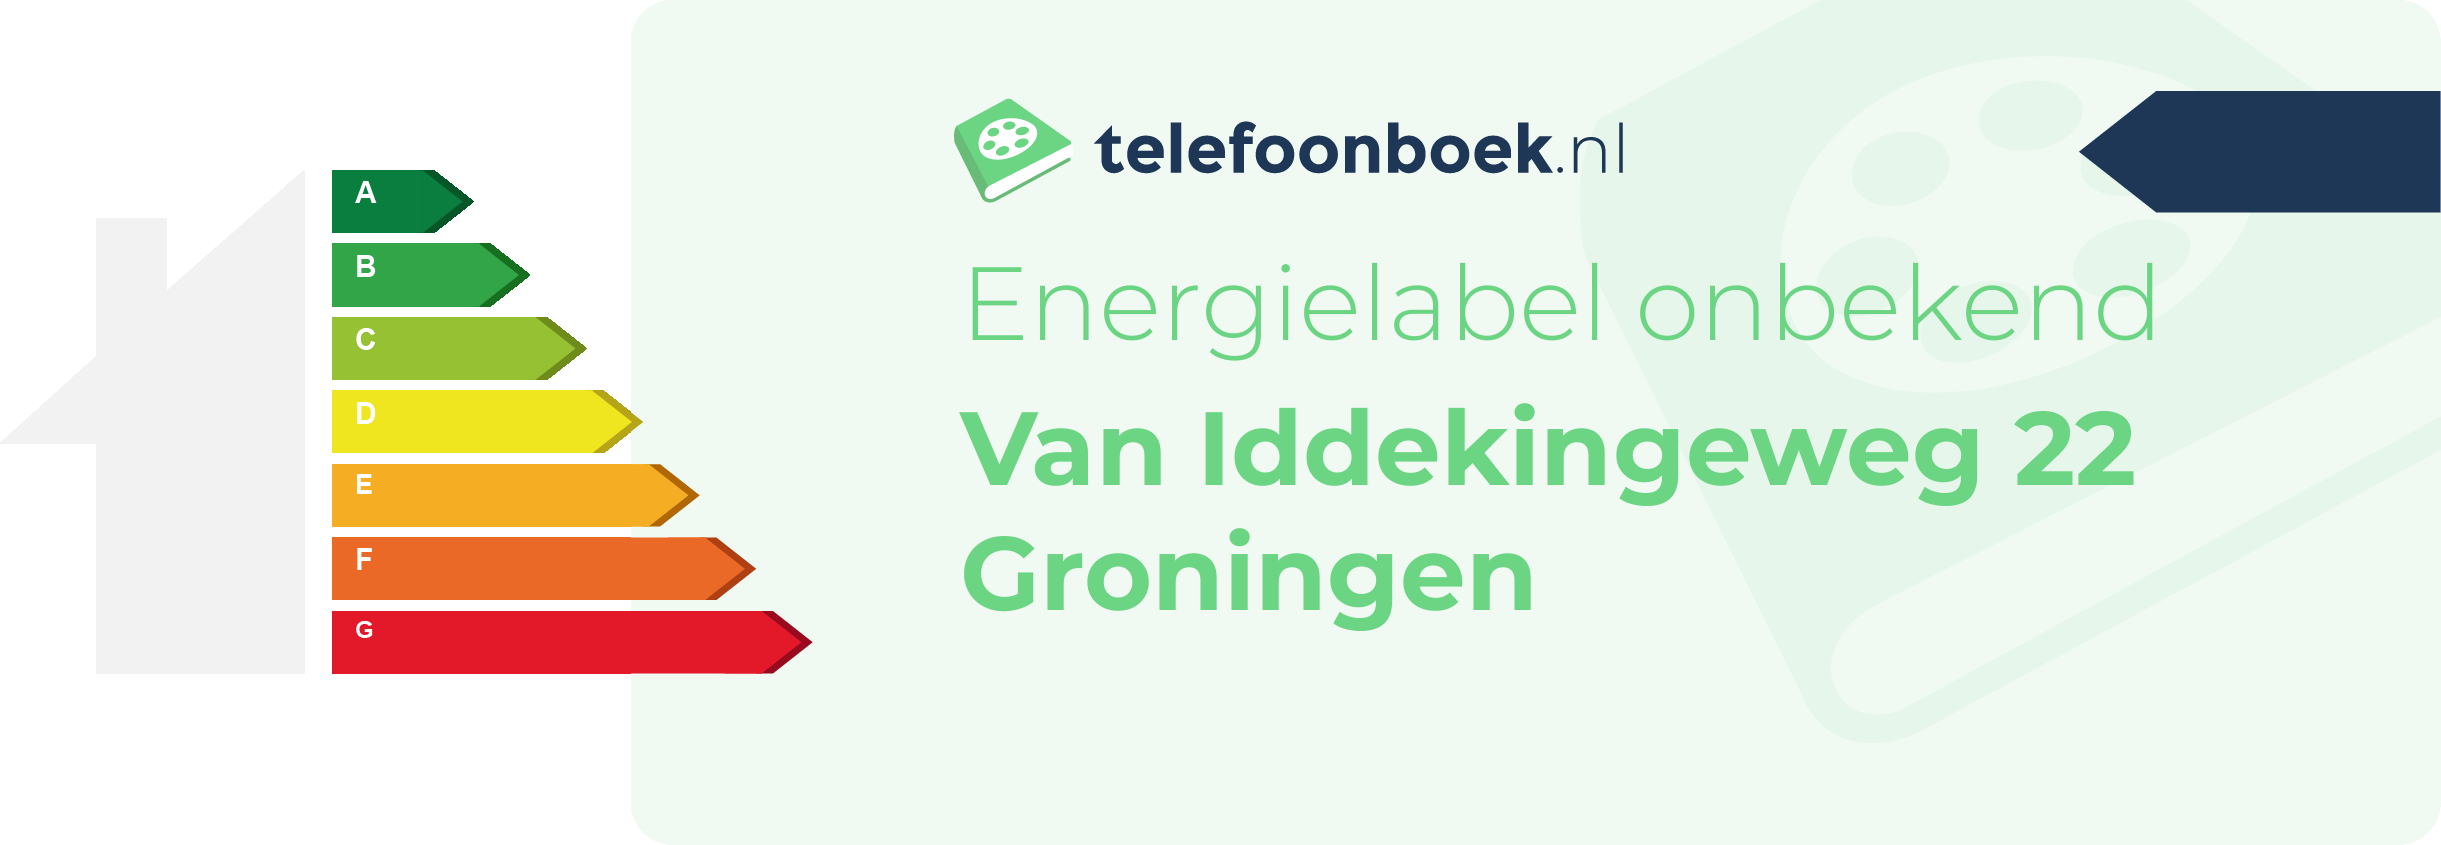 Energielabel Van Iddekingeweg 22 Groningen